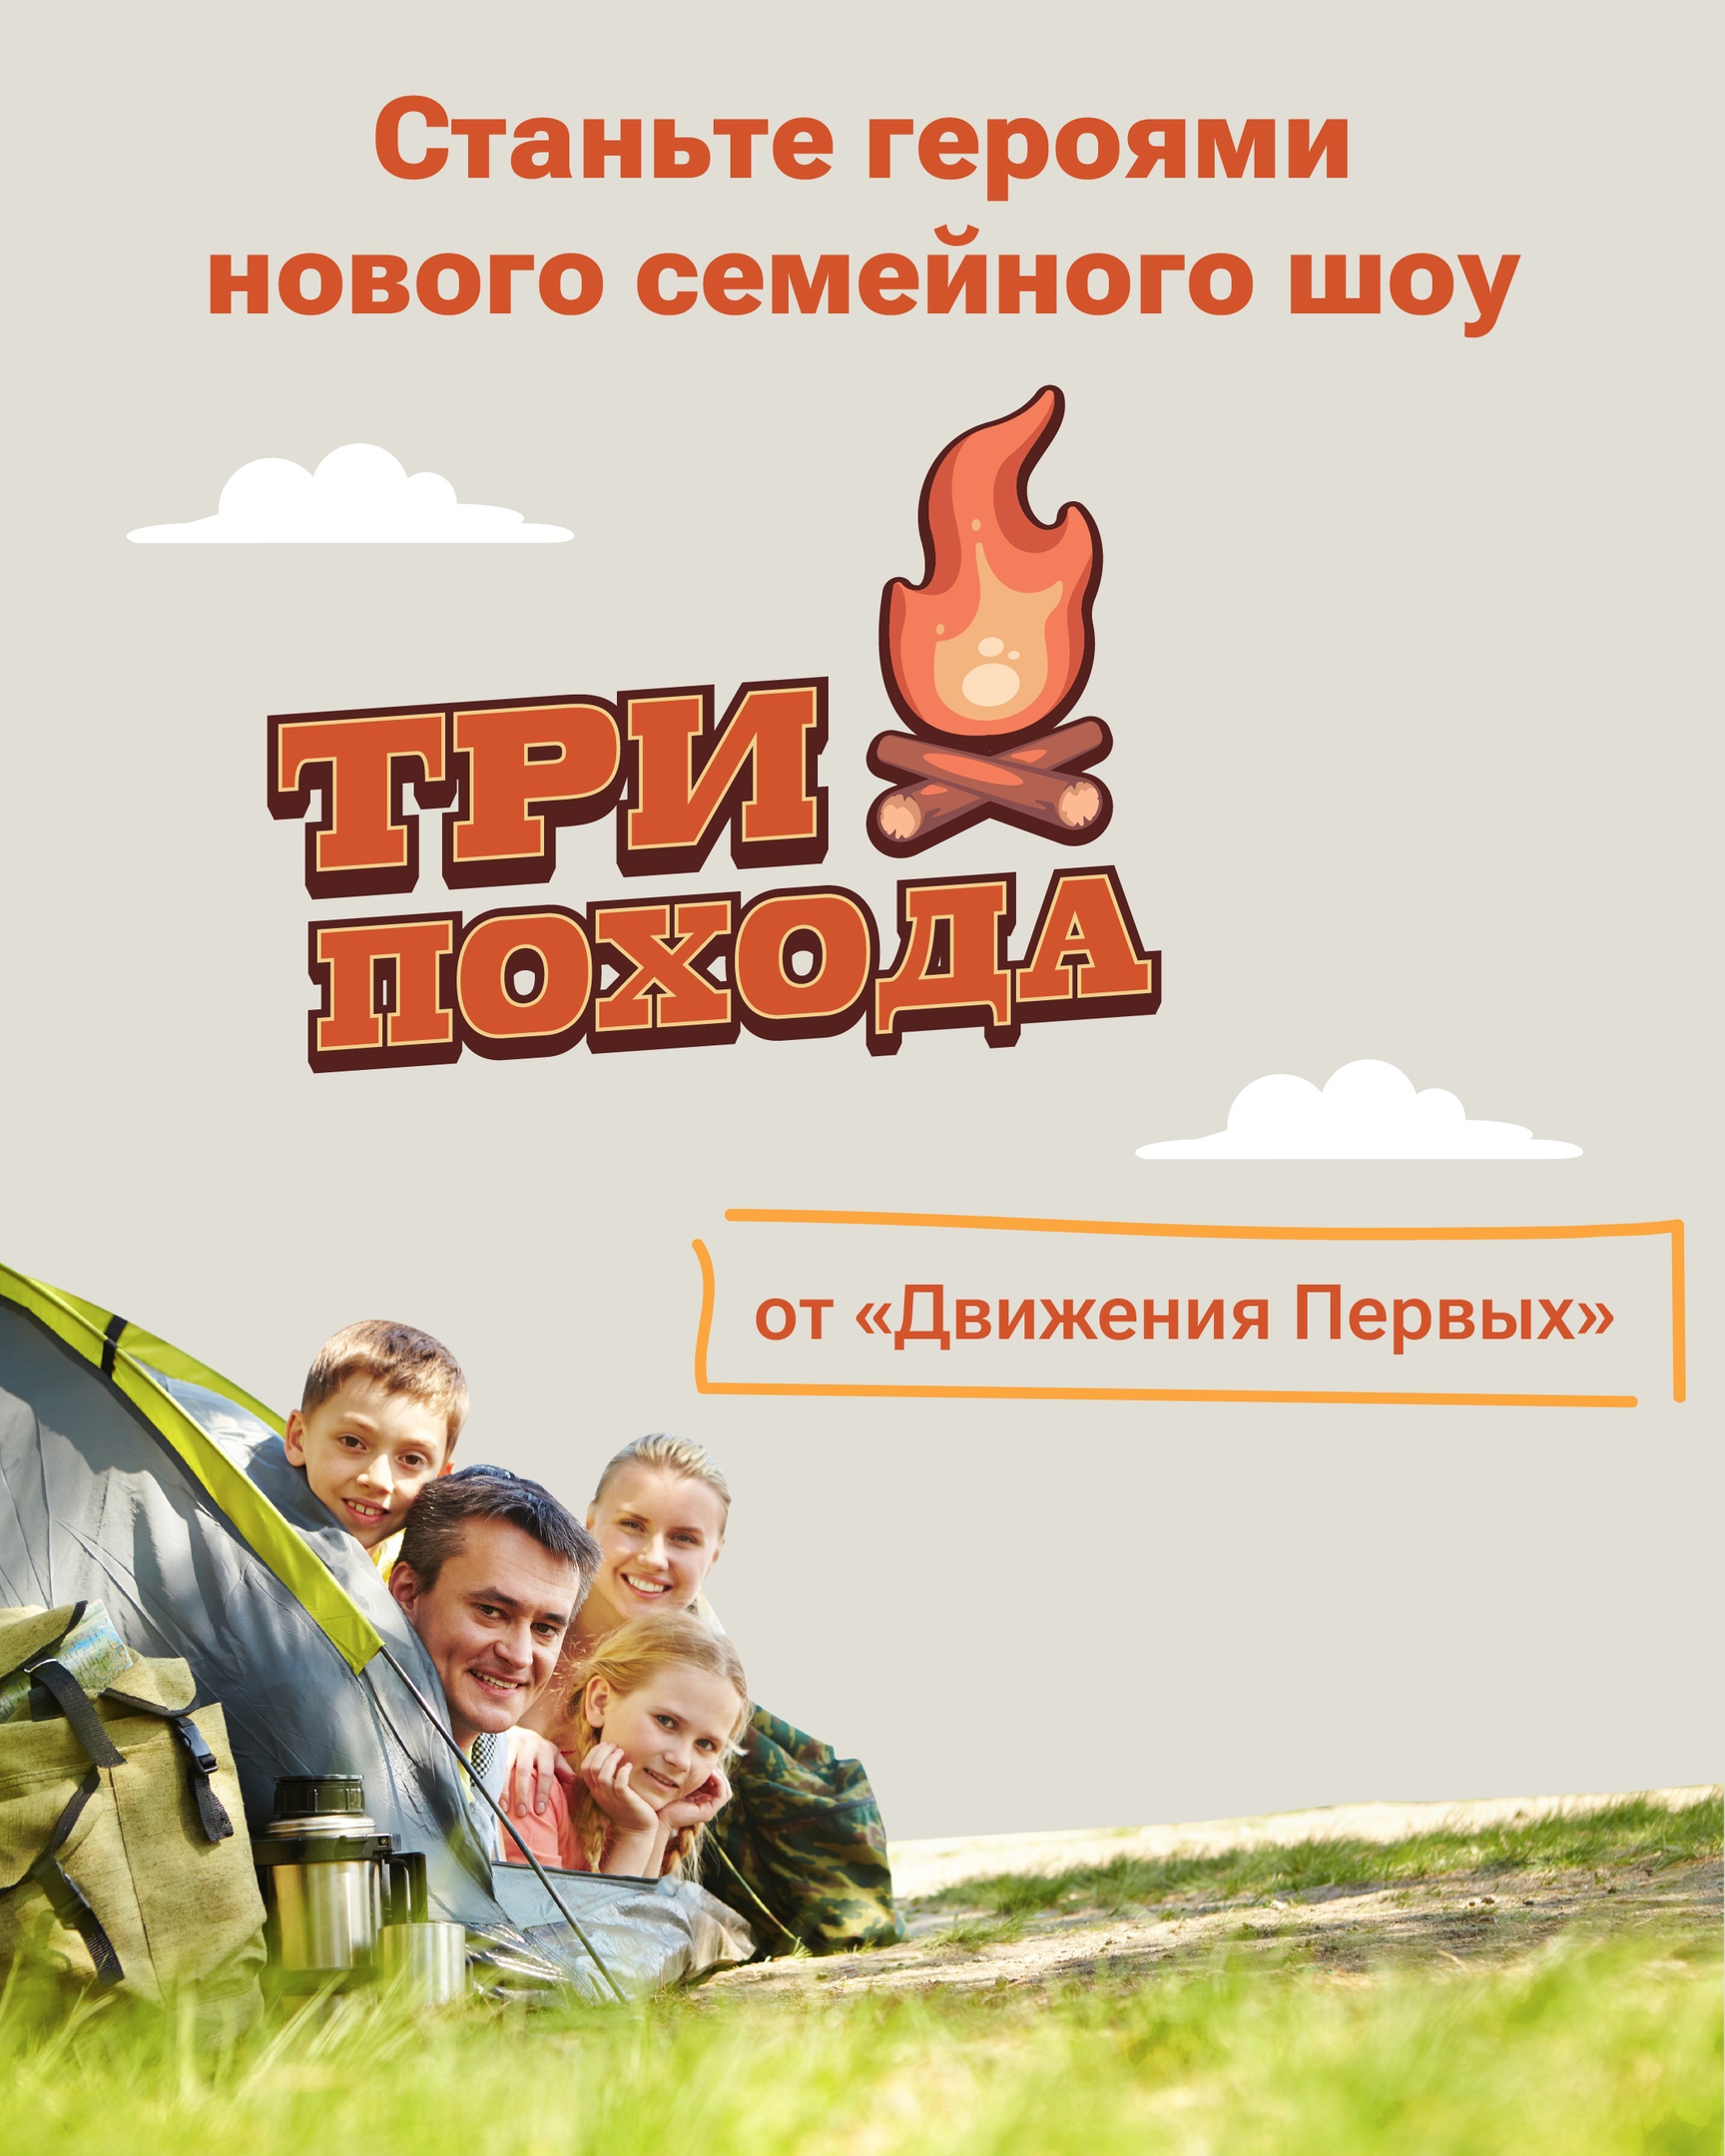 Любите путешествовать по Алтайскому краю всей семьей?.